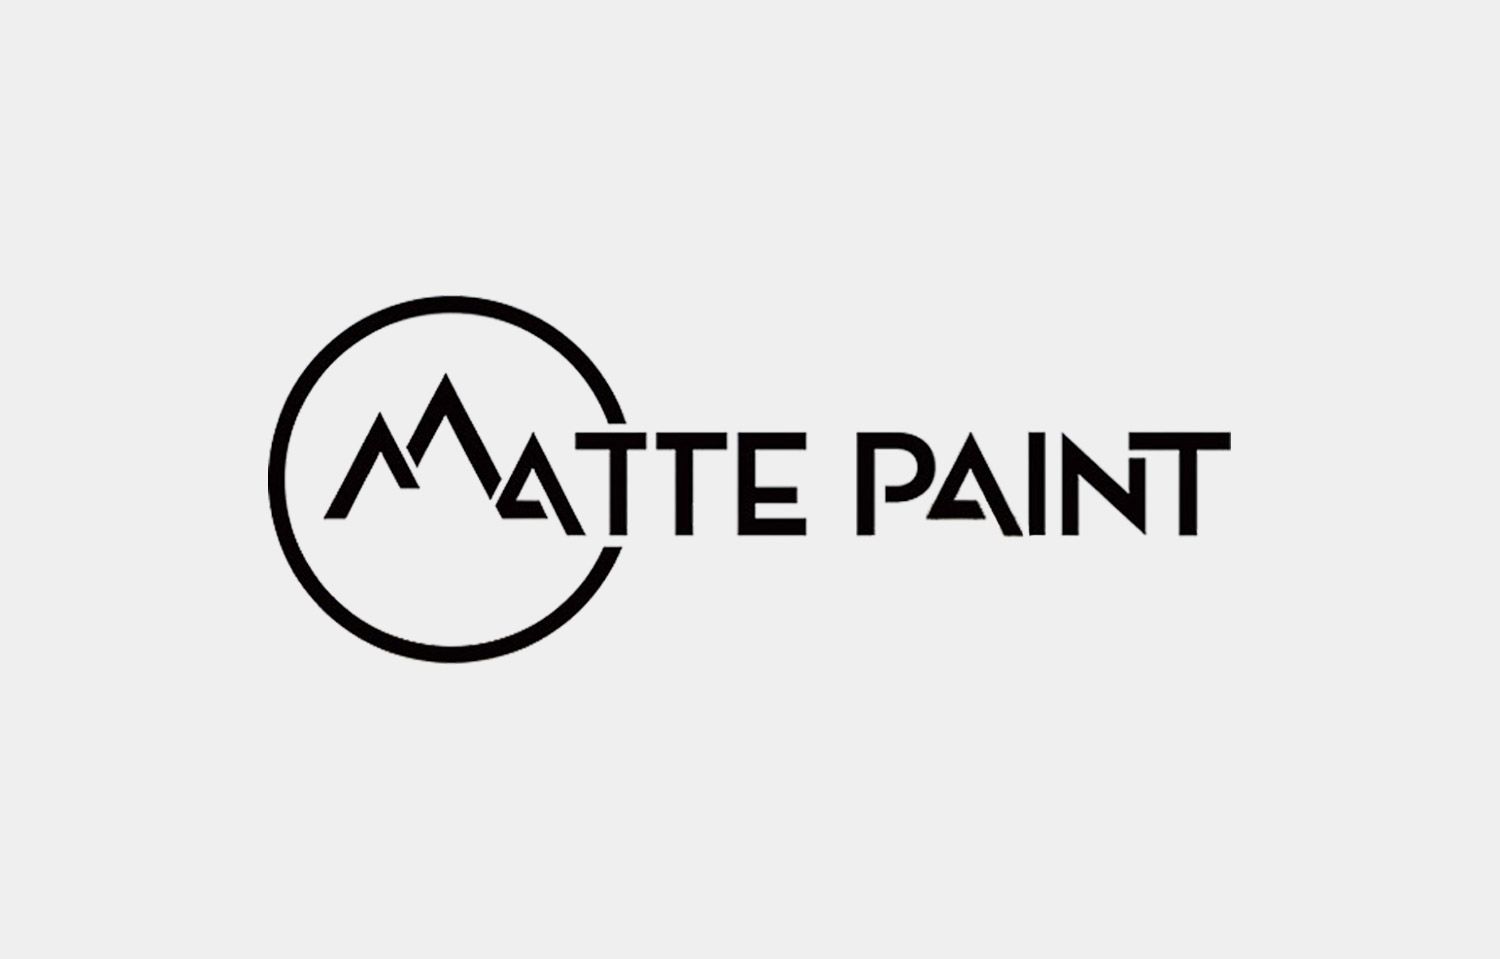 Matte paint ltd